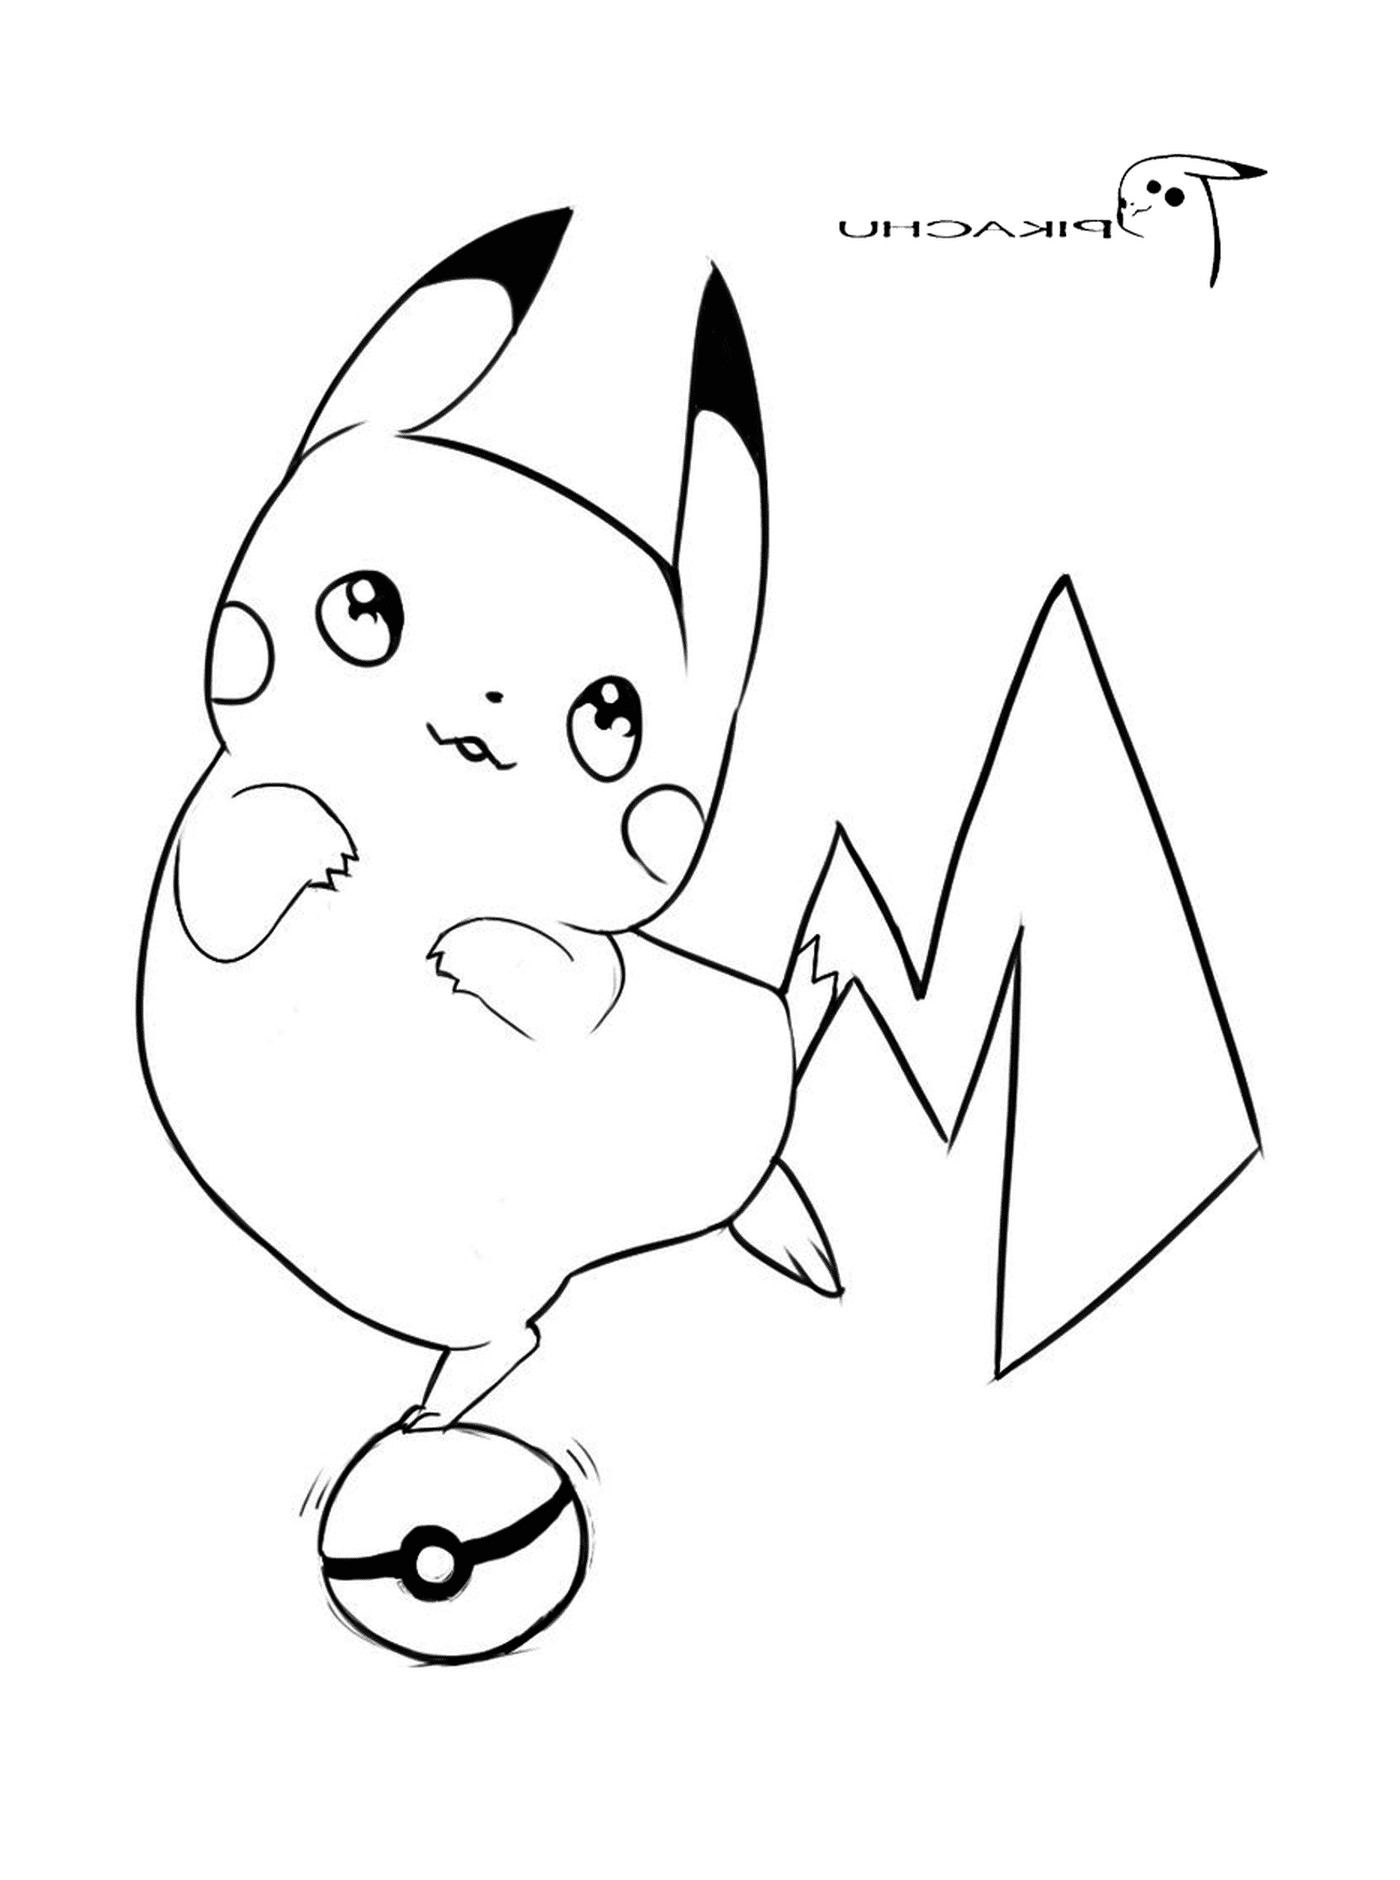  Pikachu com uma expressão orgulhosa 